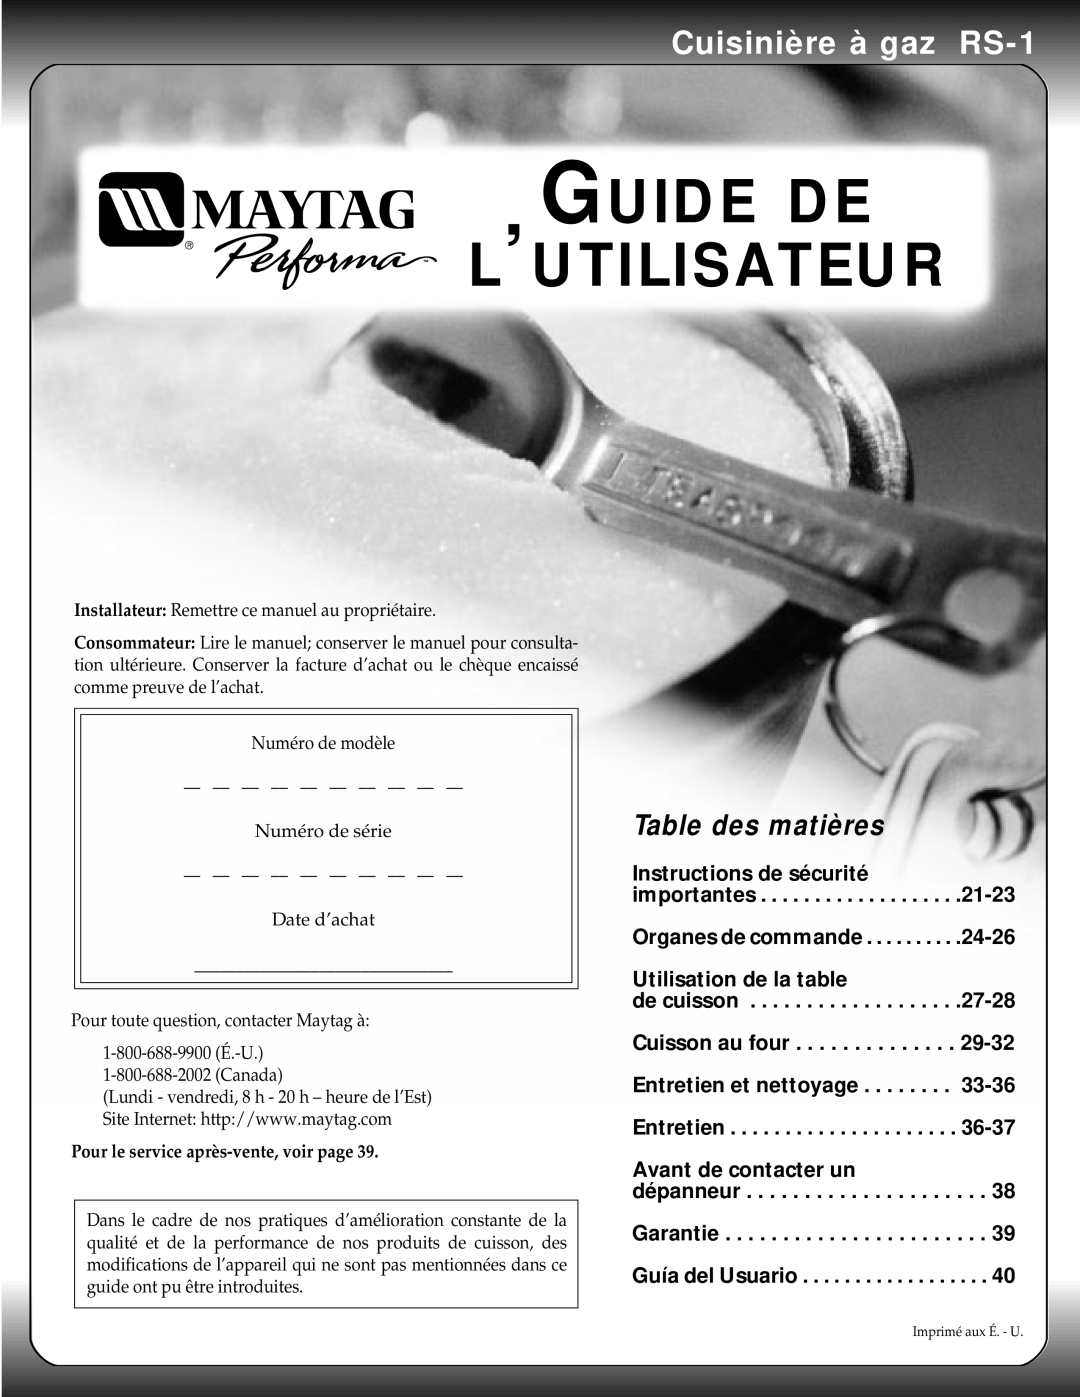 Maytag manual Guide De L’Utilisateur, Cuisinière à gaz RS-1, Table des matières 